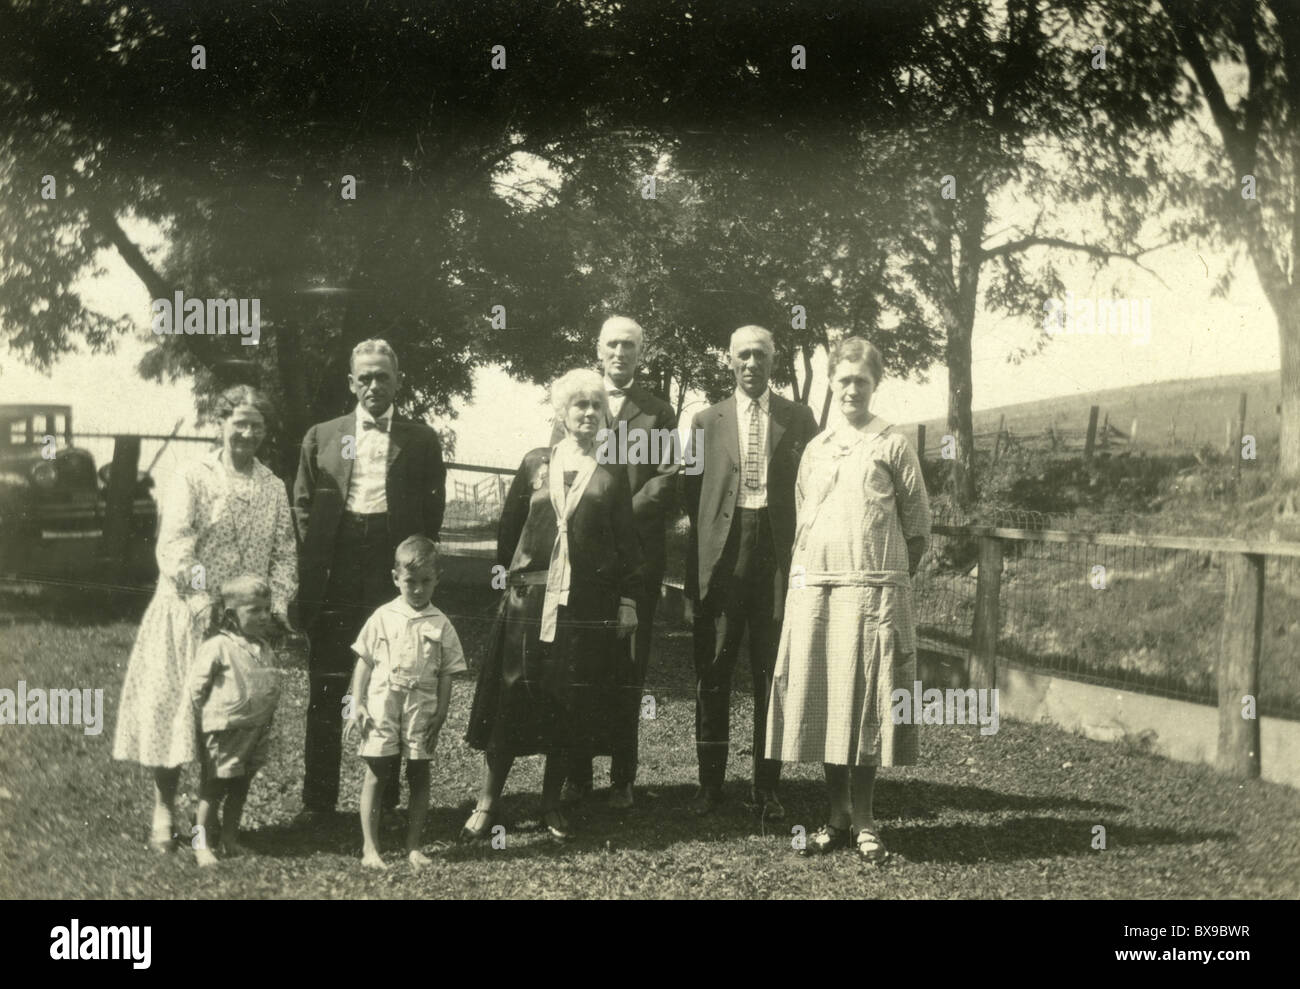 Famille pendant la dépression des années 1930 classe ouvrière car Ford modèle A Americana noir et blanc Banque D'Images